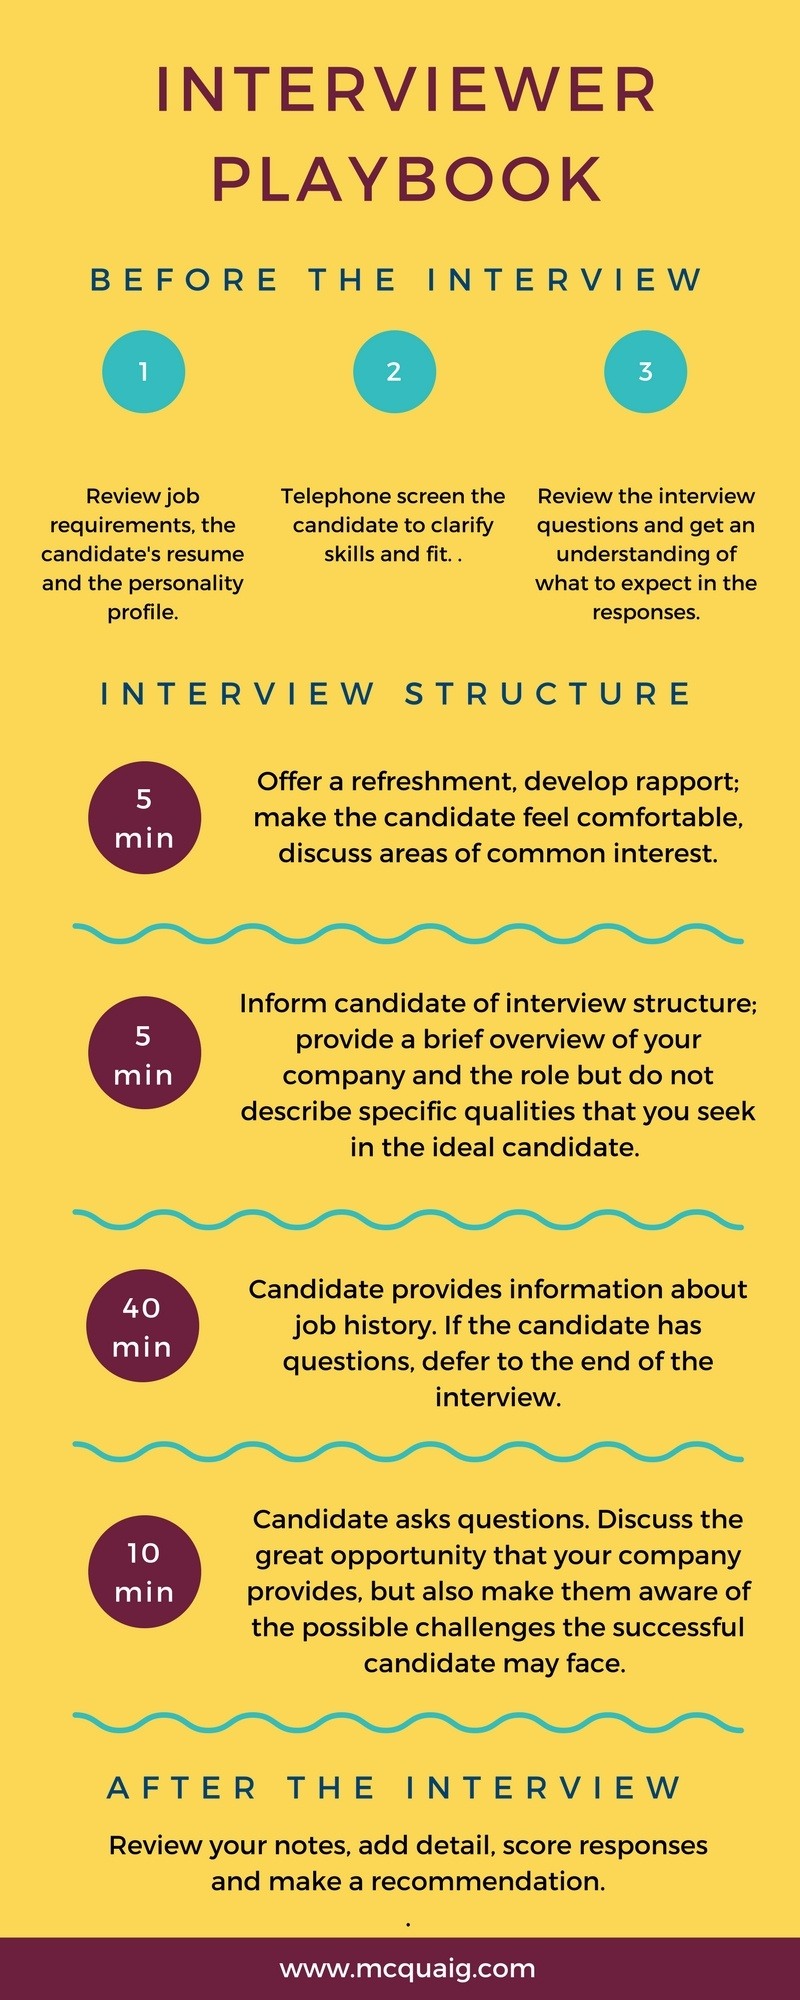 The Interviewer Playbook: A Winning Interview Process Template